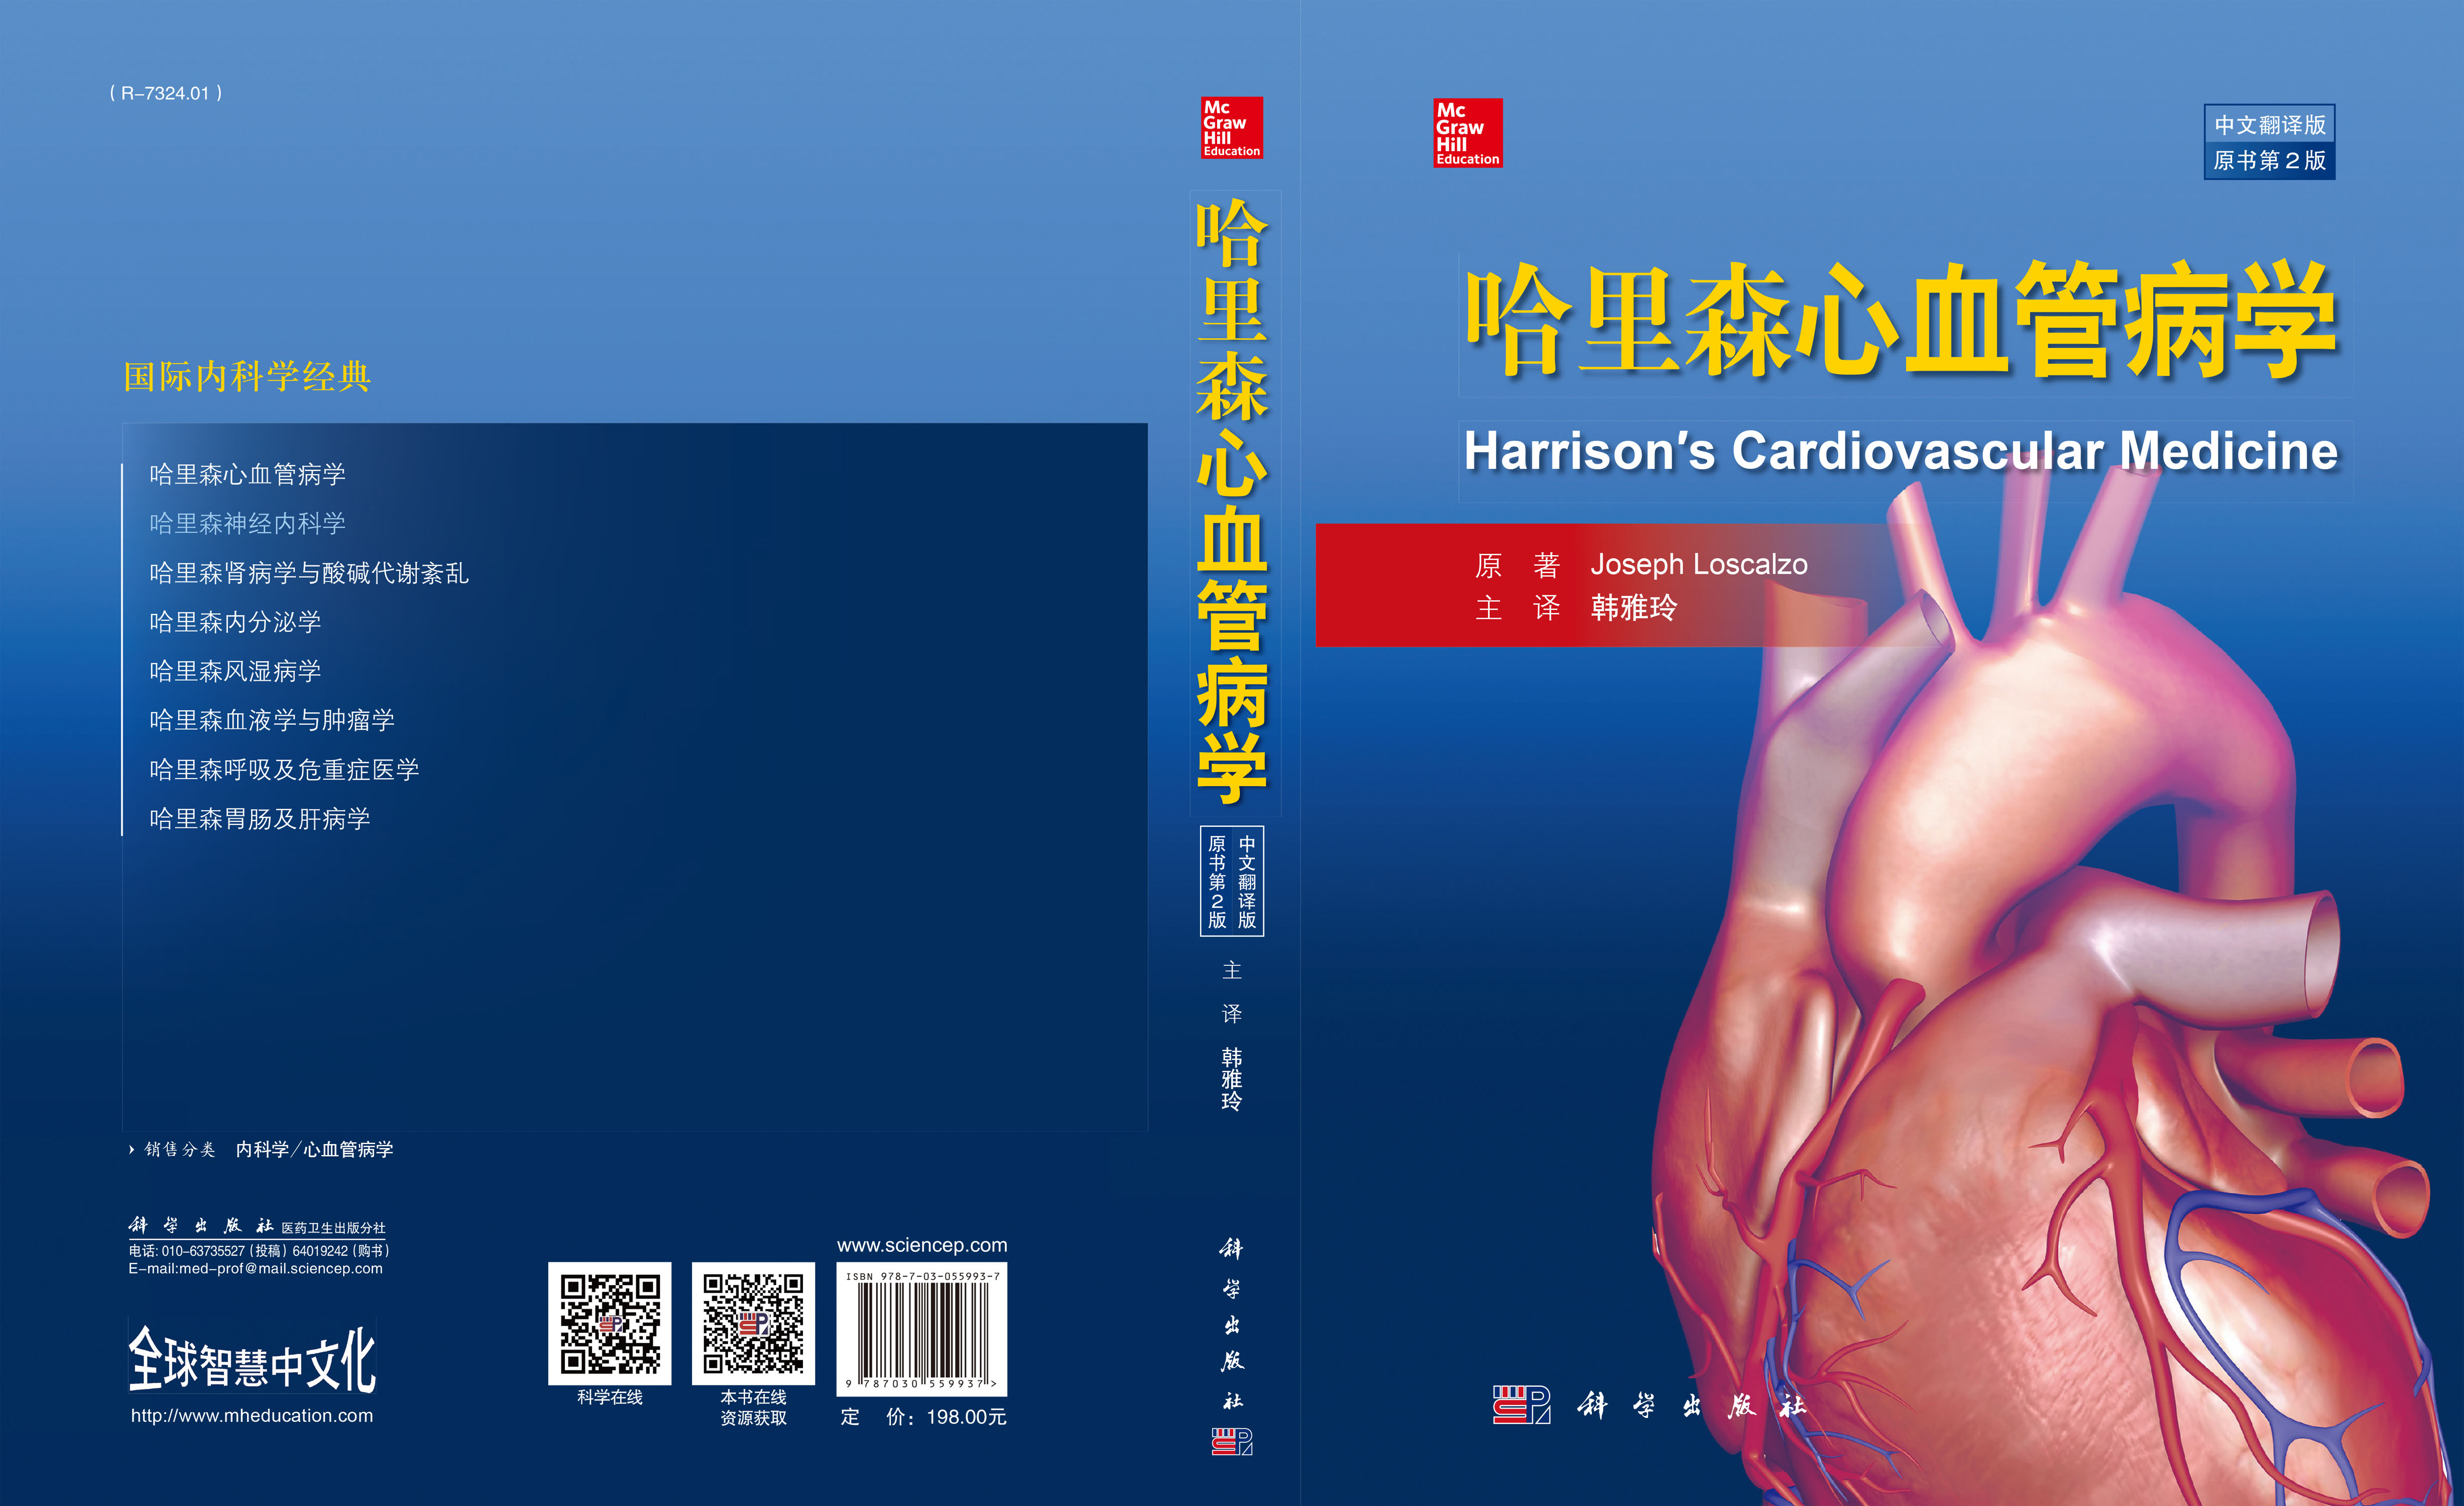 哈里森心血管病学(中文翻译版    原书第2版)